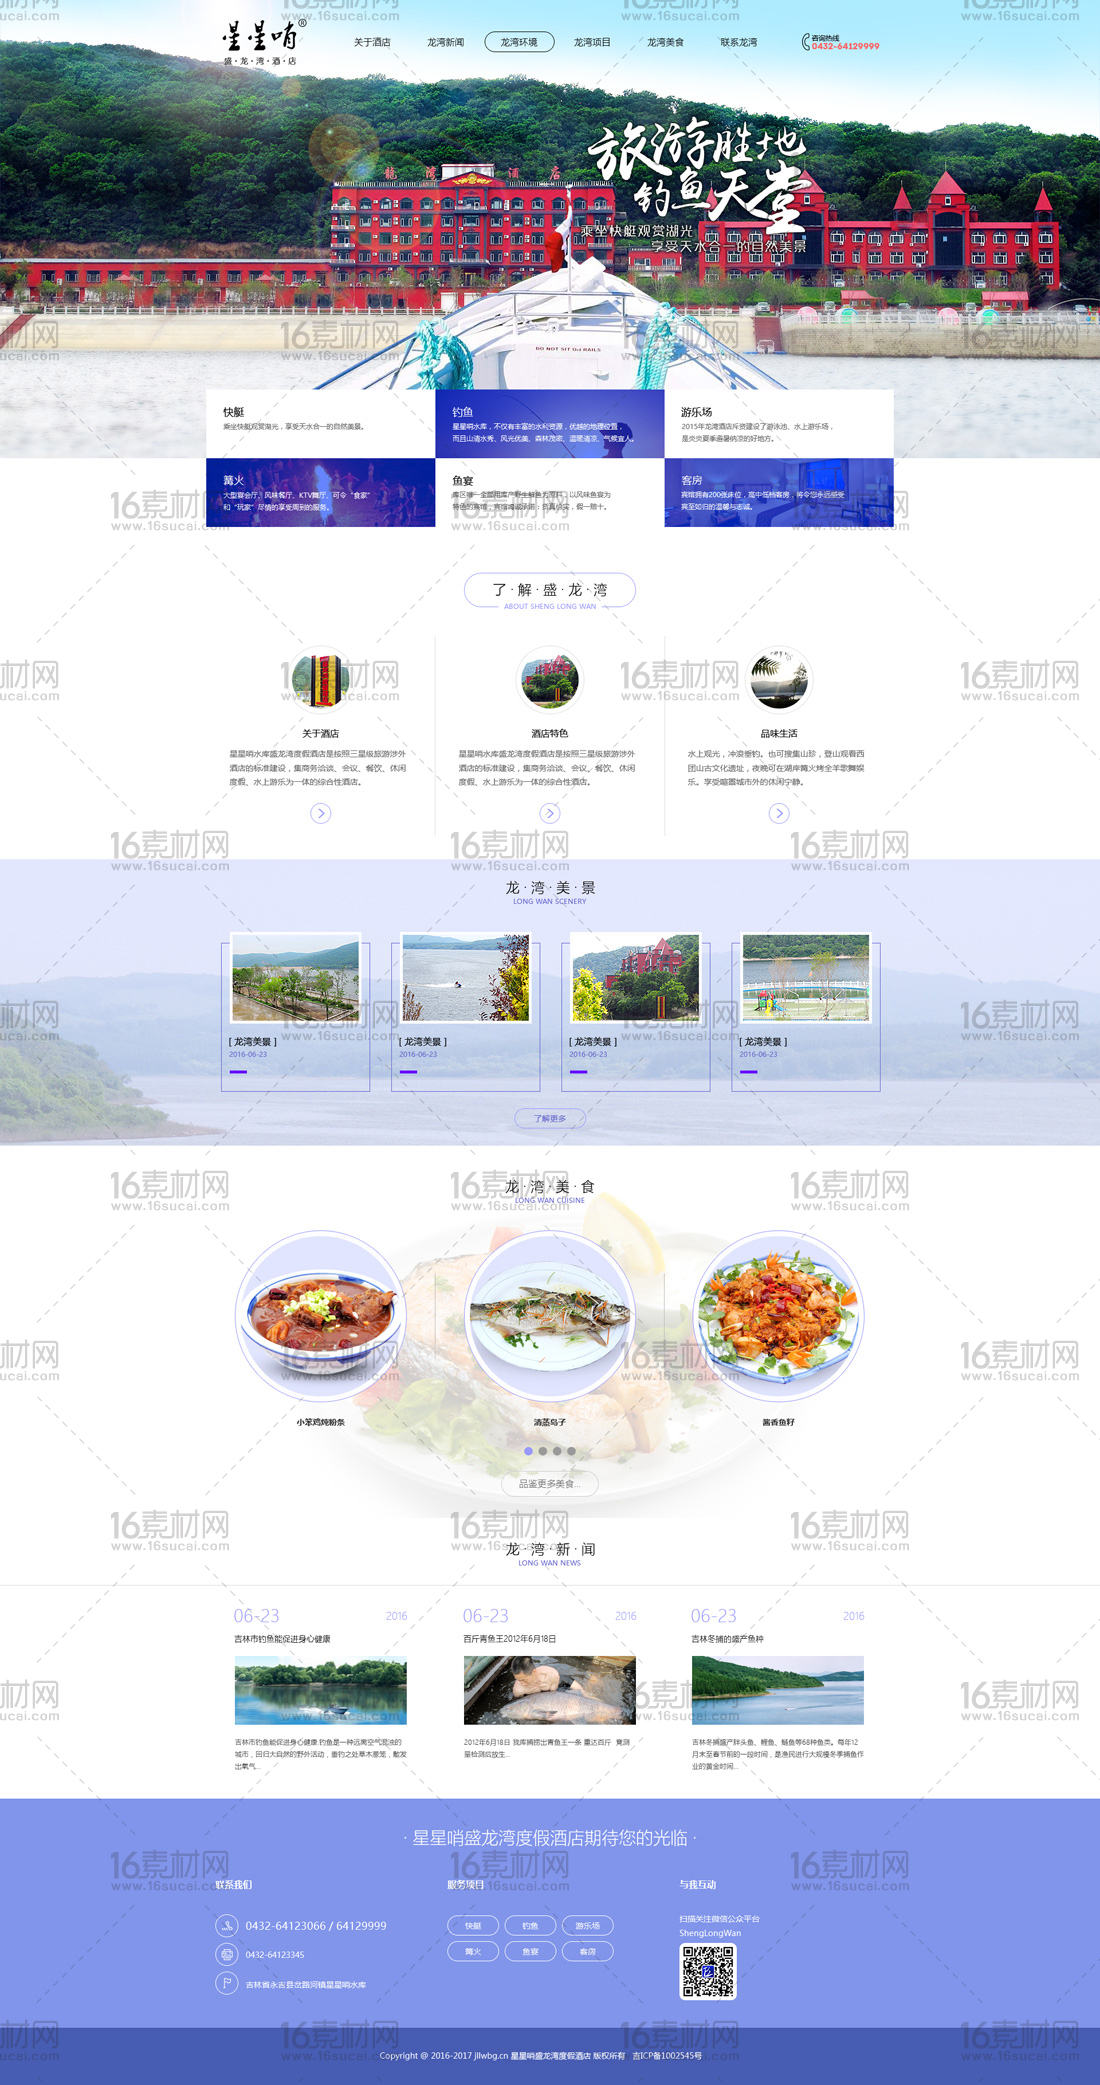 简约大气龙湾旅游网页模板psd分层素材